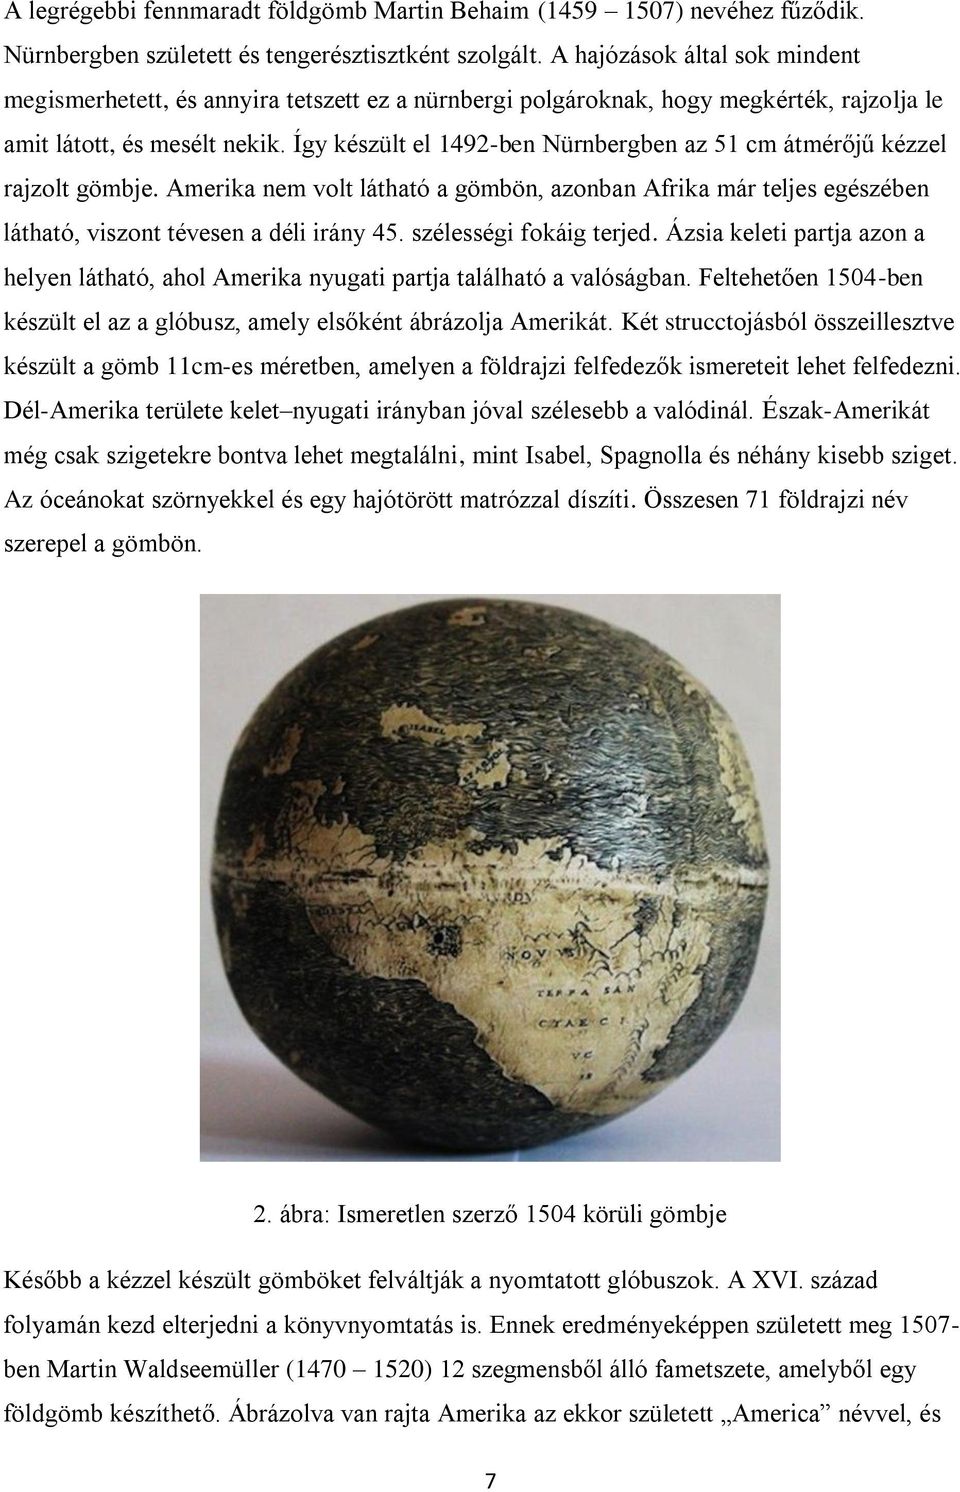 Így készült el 1492-ben Nürnbergben az 51 cm átmérőjű kézzel rajzolt gömbje. Amerika nem volt látható a gömbön, azonban Afrika már teljes egészében látható, viszont tévesen a déli irány 45.